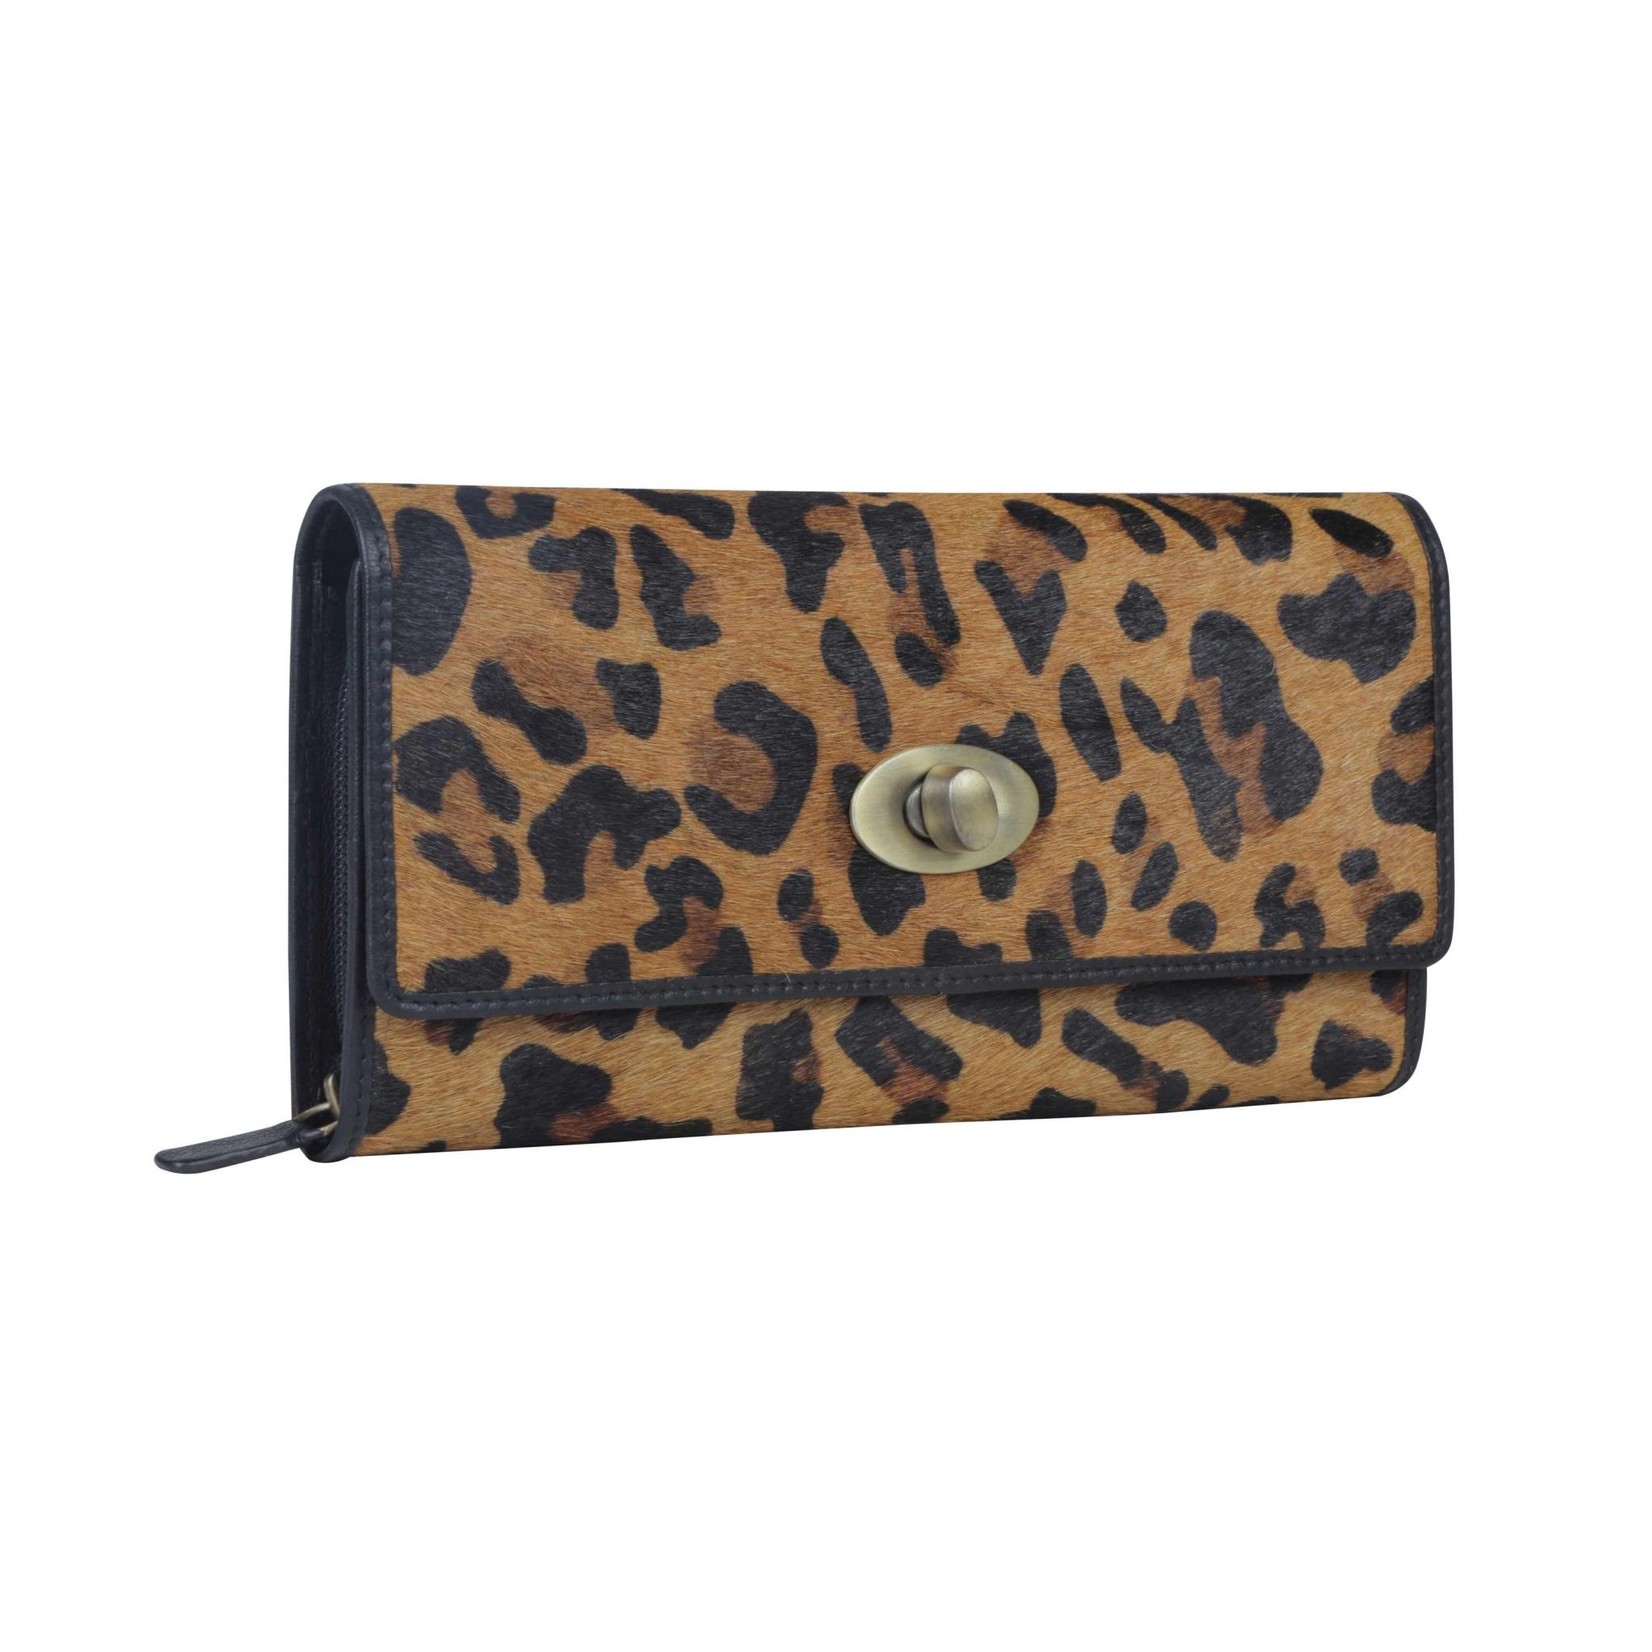 Myra Bags S-3631 Genteel Leopard Print Wallet